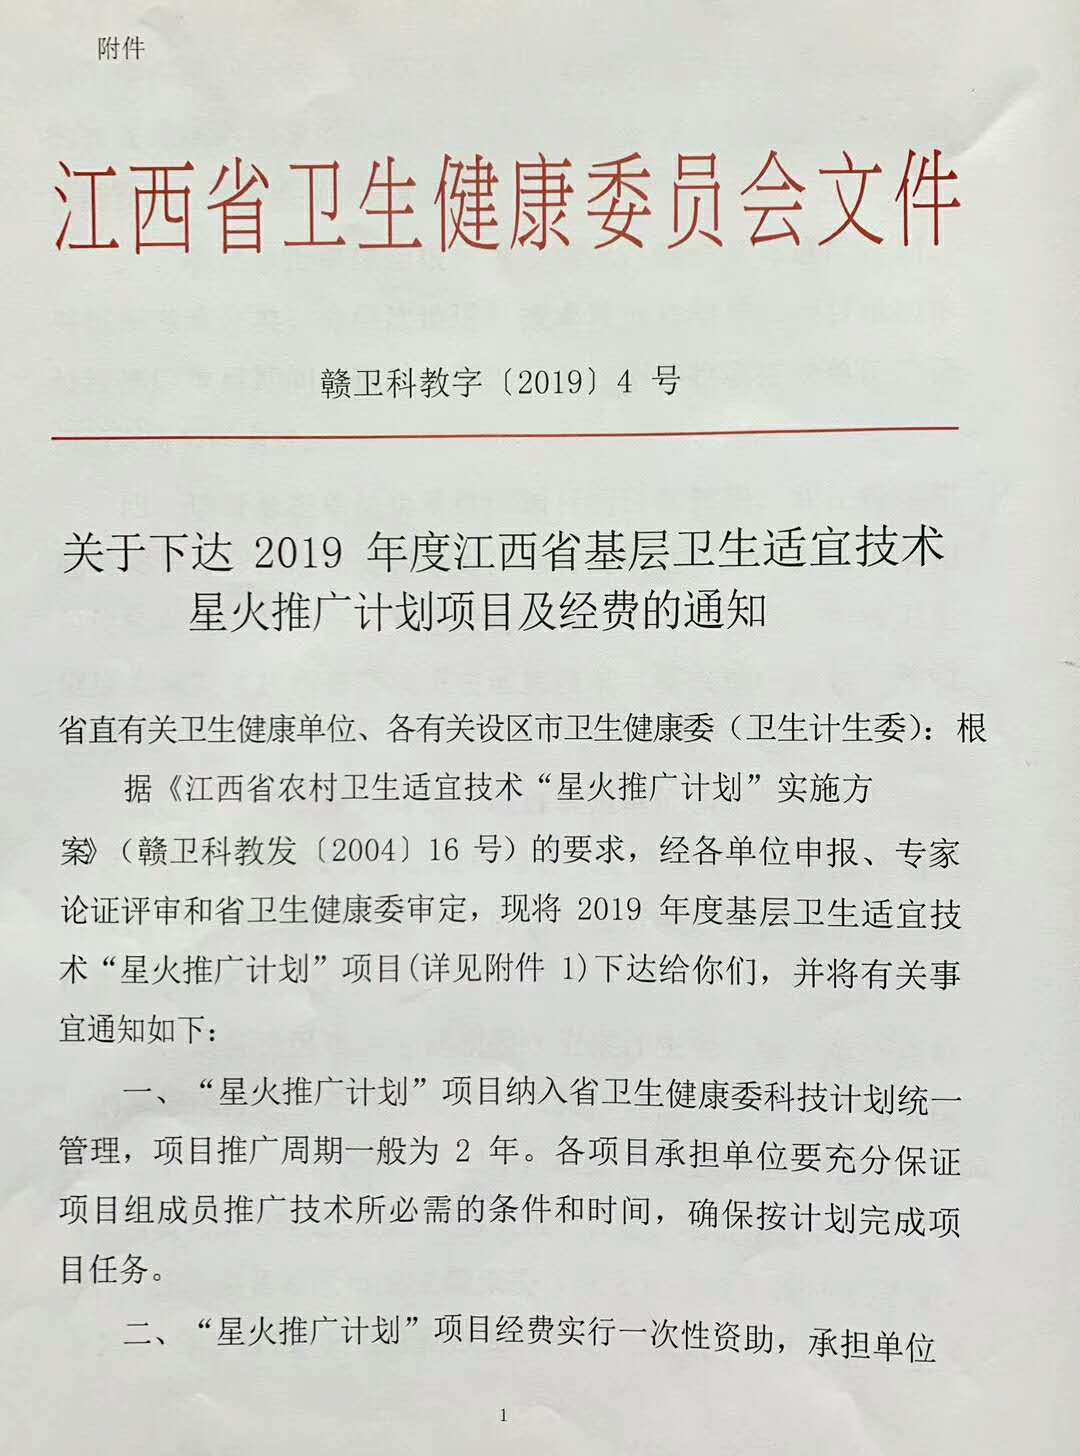 2019年江西基层卫生适宜技术星火推广项目的通知